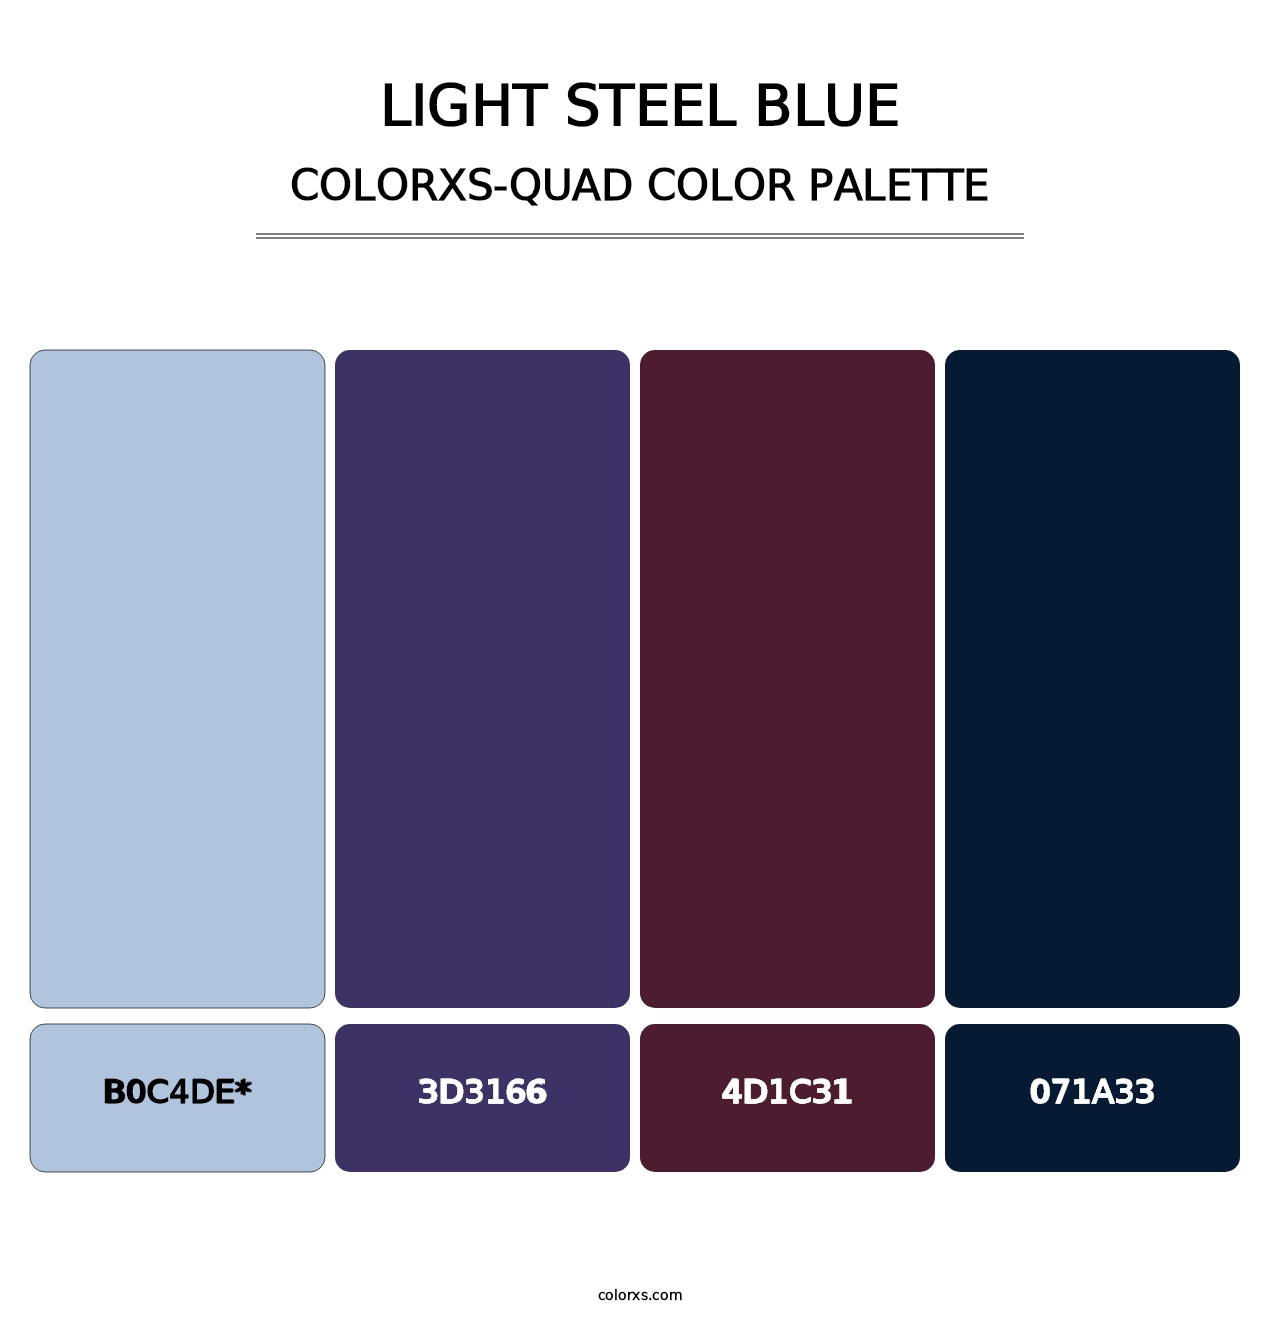 Light Steel Blue - Colorxs Quad Palette